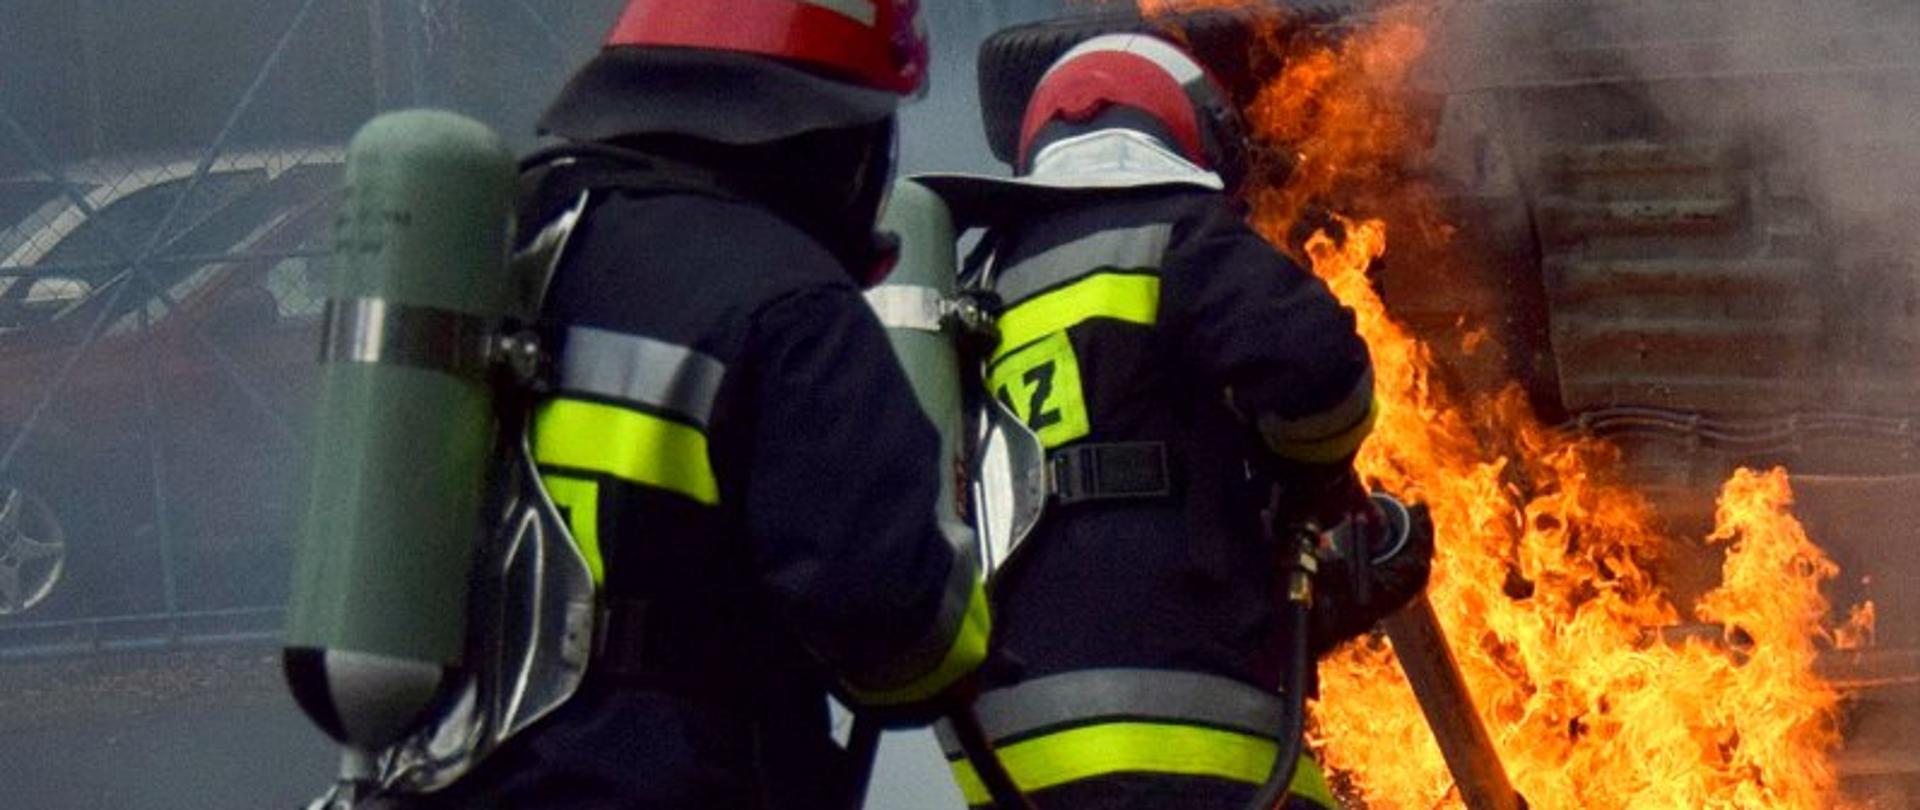 Dwóch strażaków ubranych w ubrania specjalne (nomexy) w hełmach i aparatach powietrznych gasi podwozie płonącego auta. Samochód leży na boku